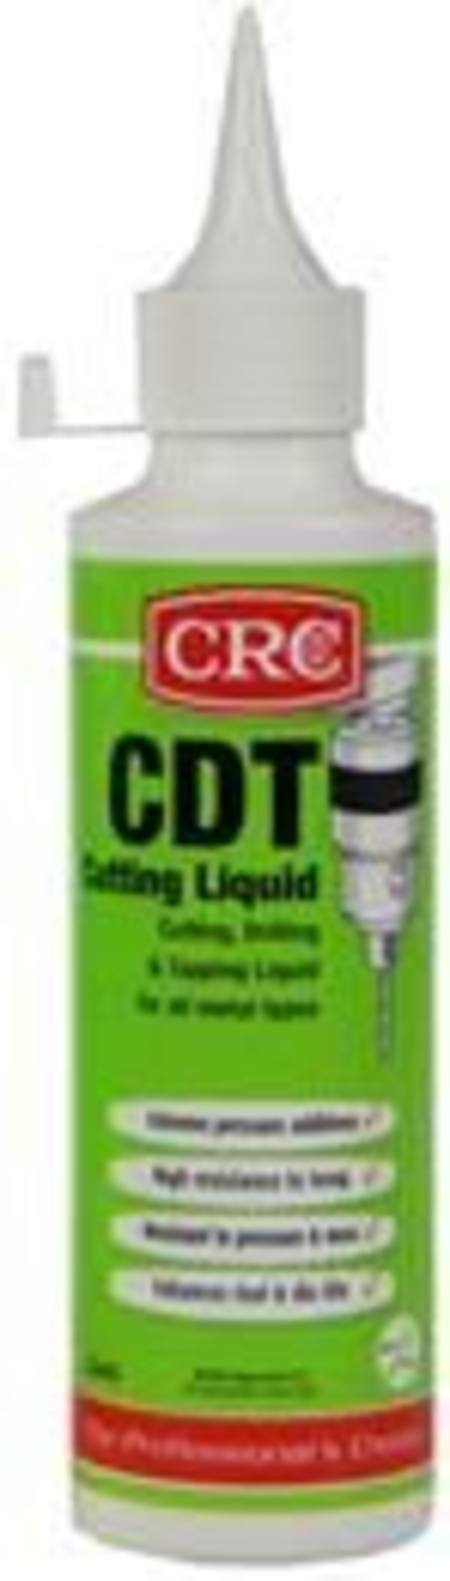 CRC CDT CUTTING LIQUID 250ml